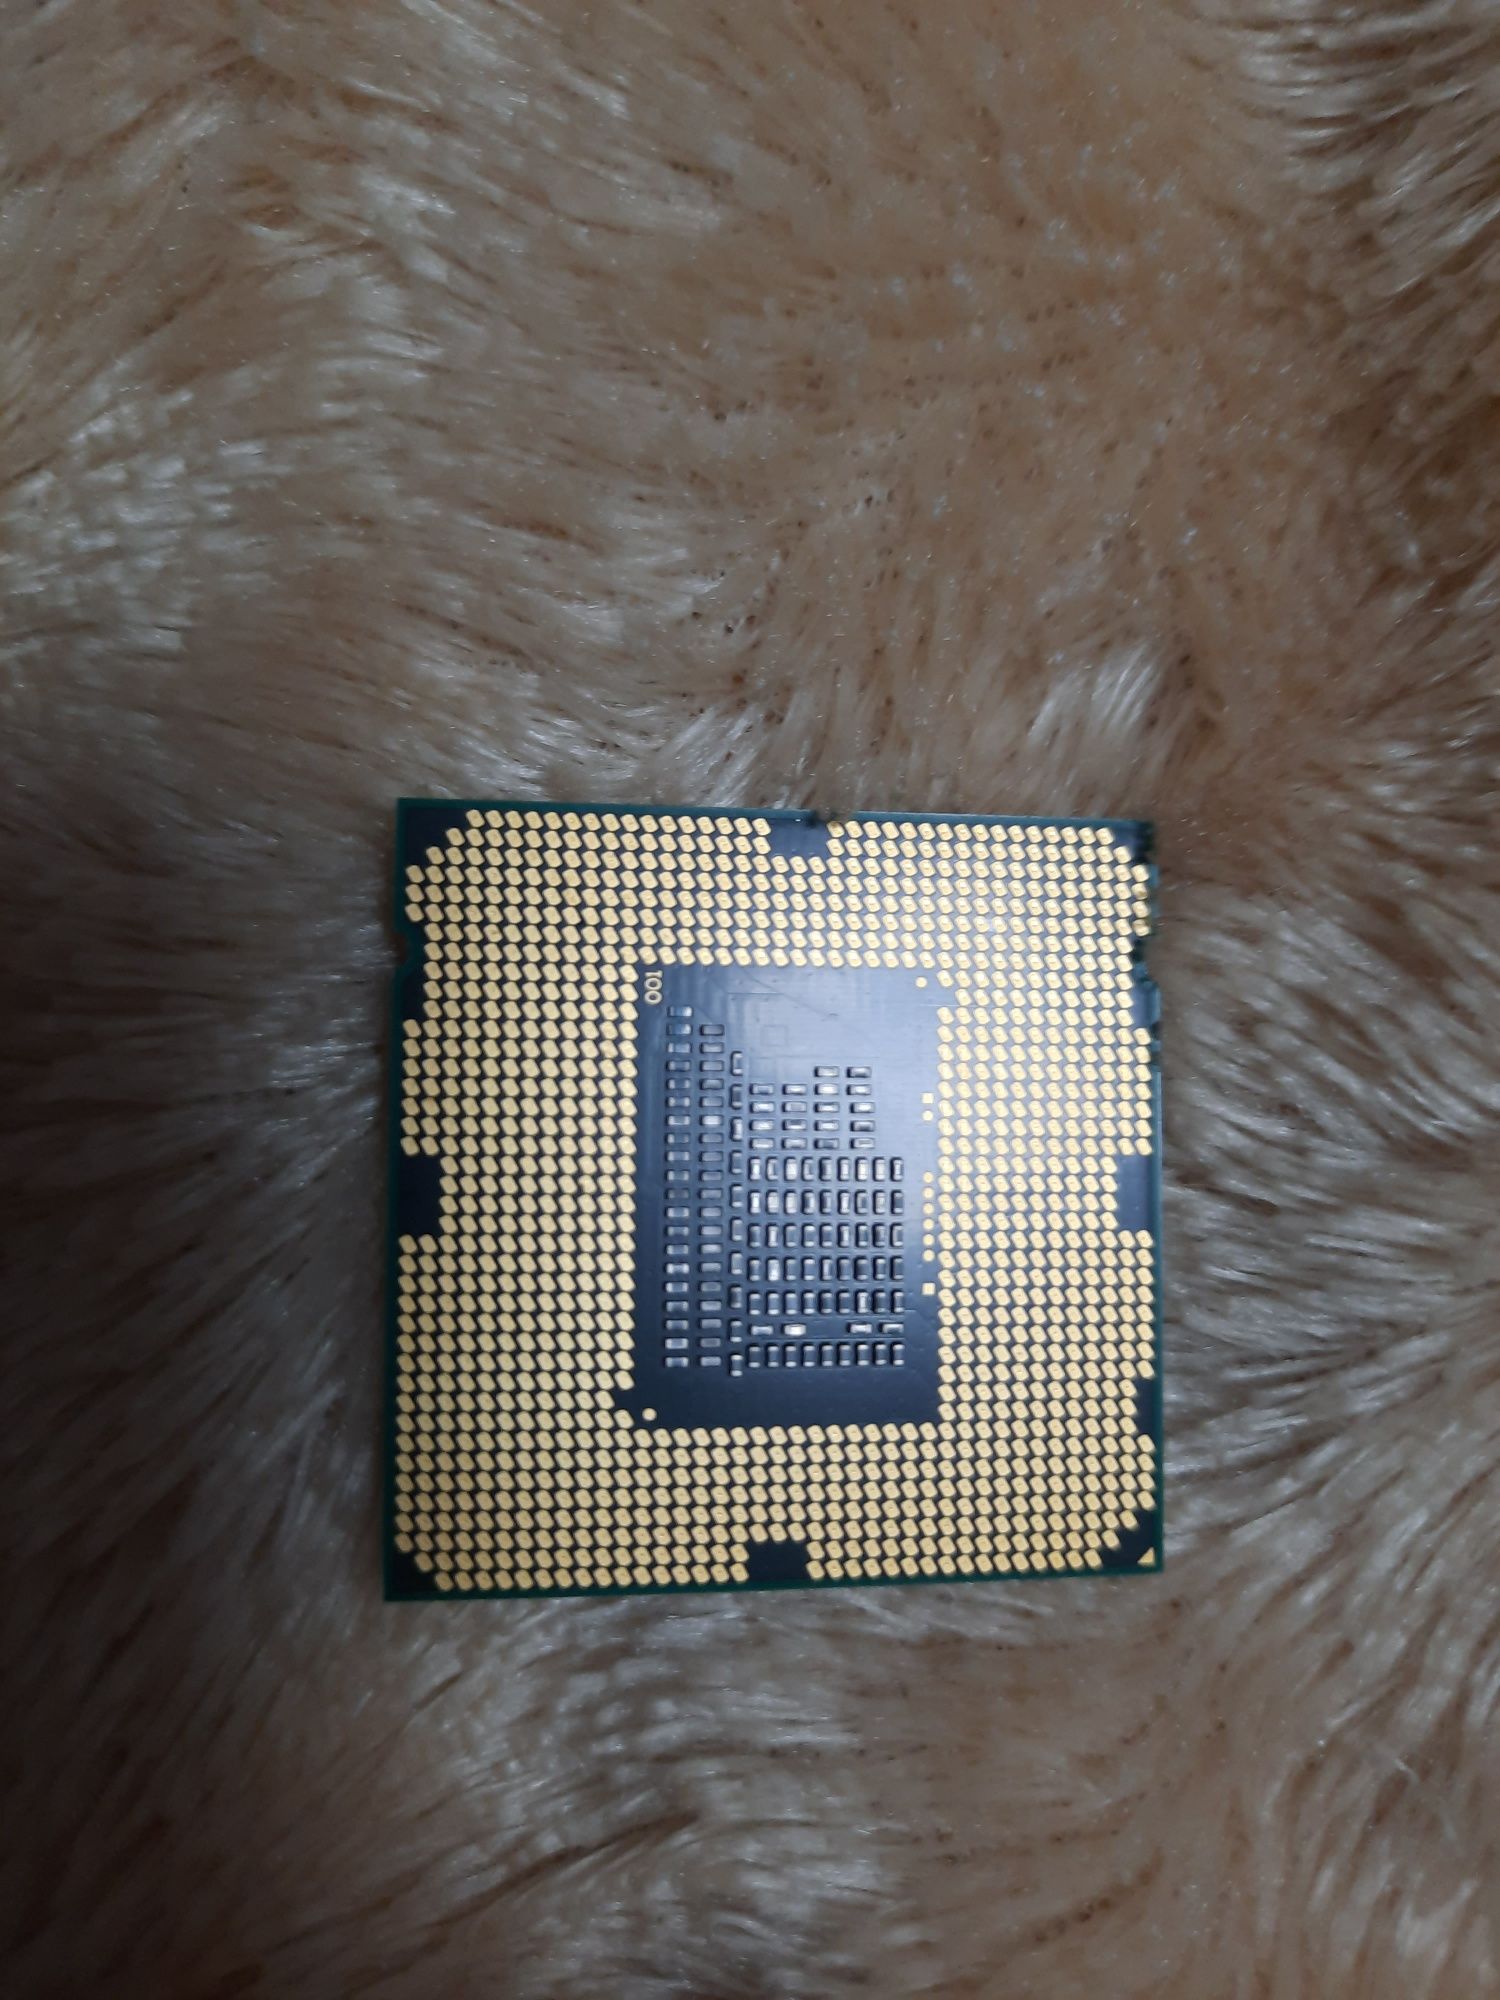 Процессор intel core i3 2120